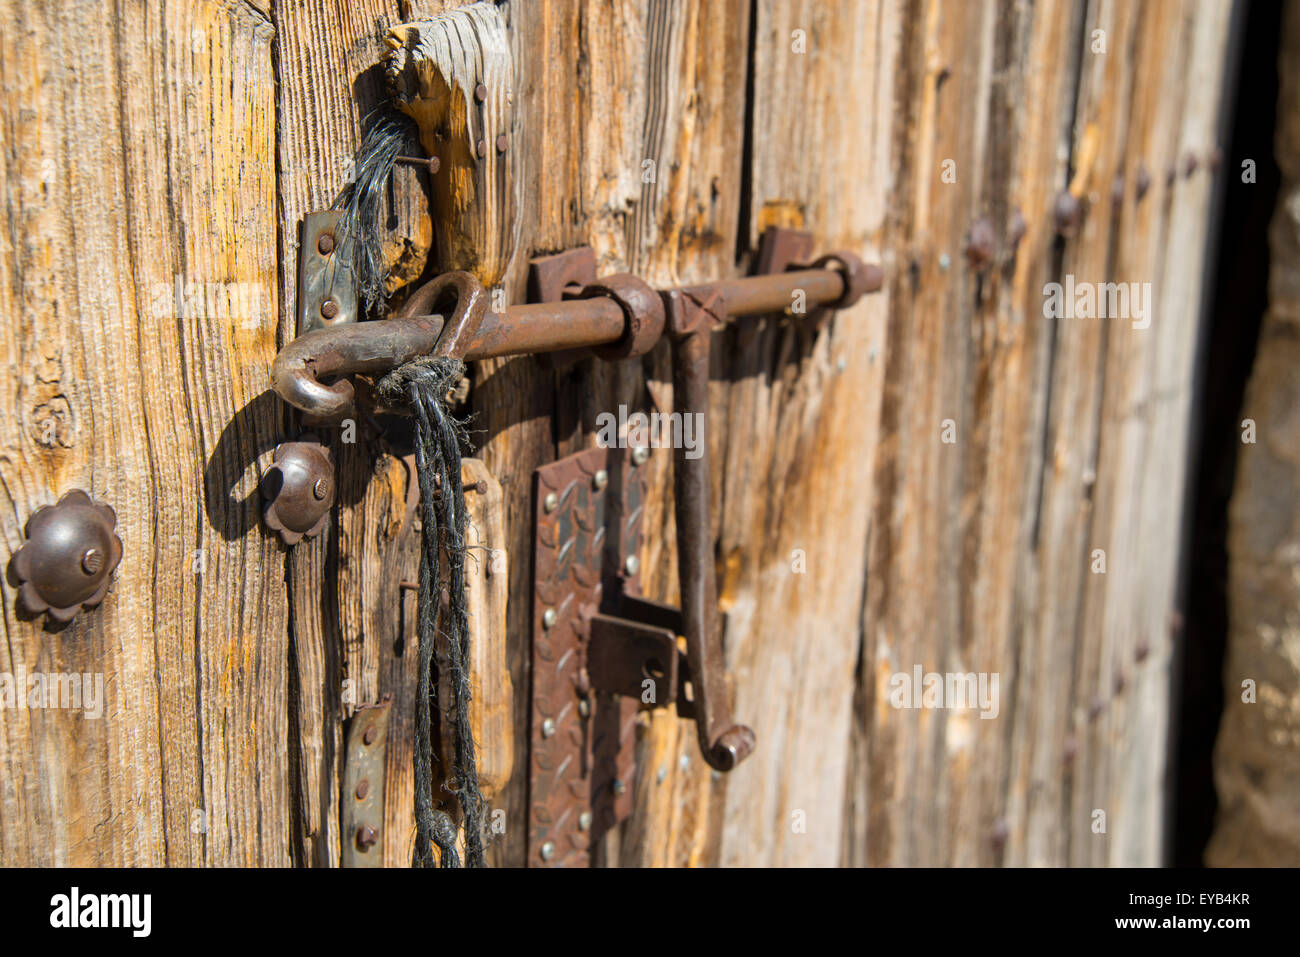 Rustic wooden door. Close view. Stock Photo